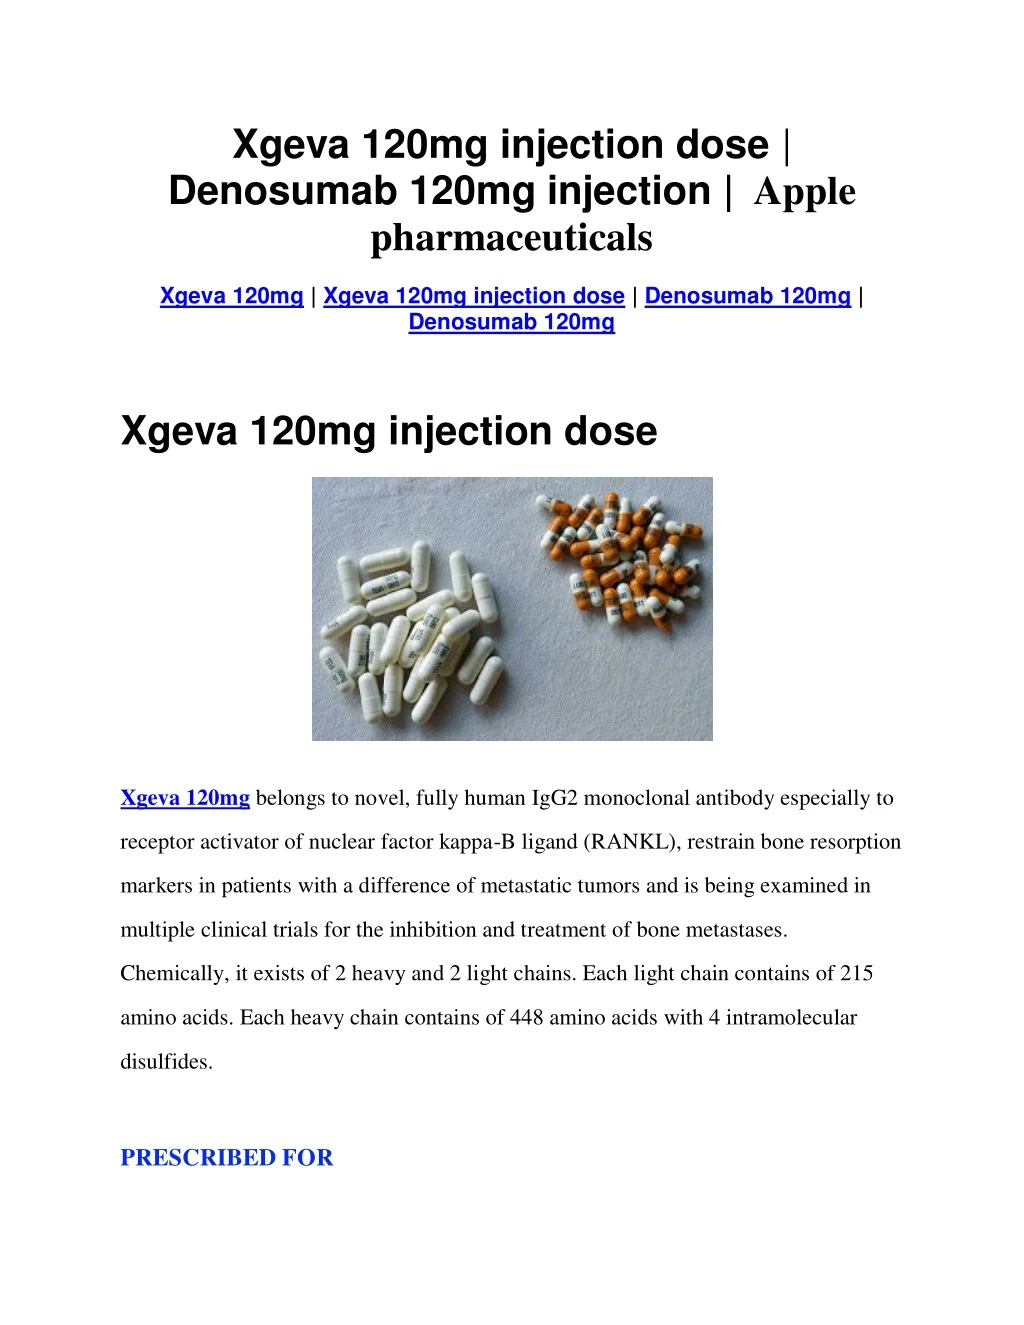 xgeva 120mg injection dose denosumab 120mg